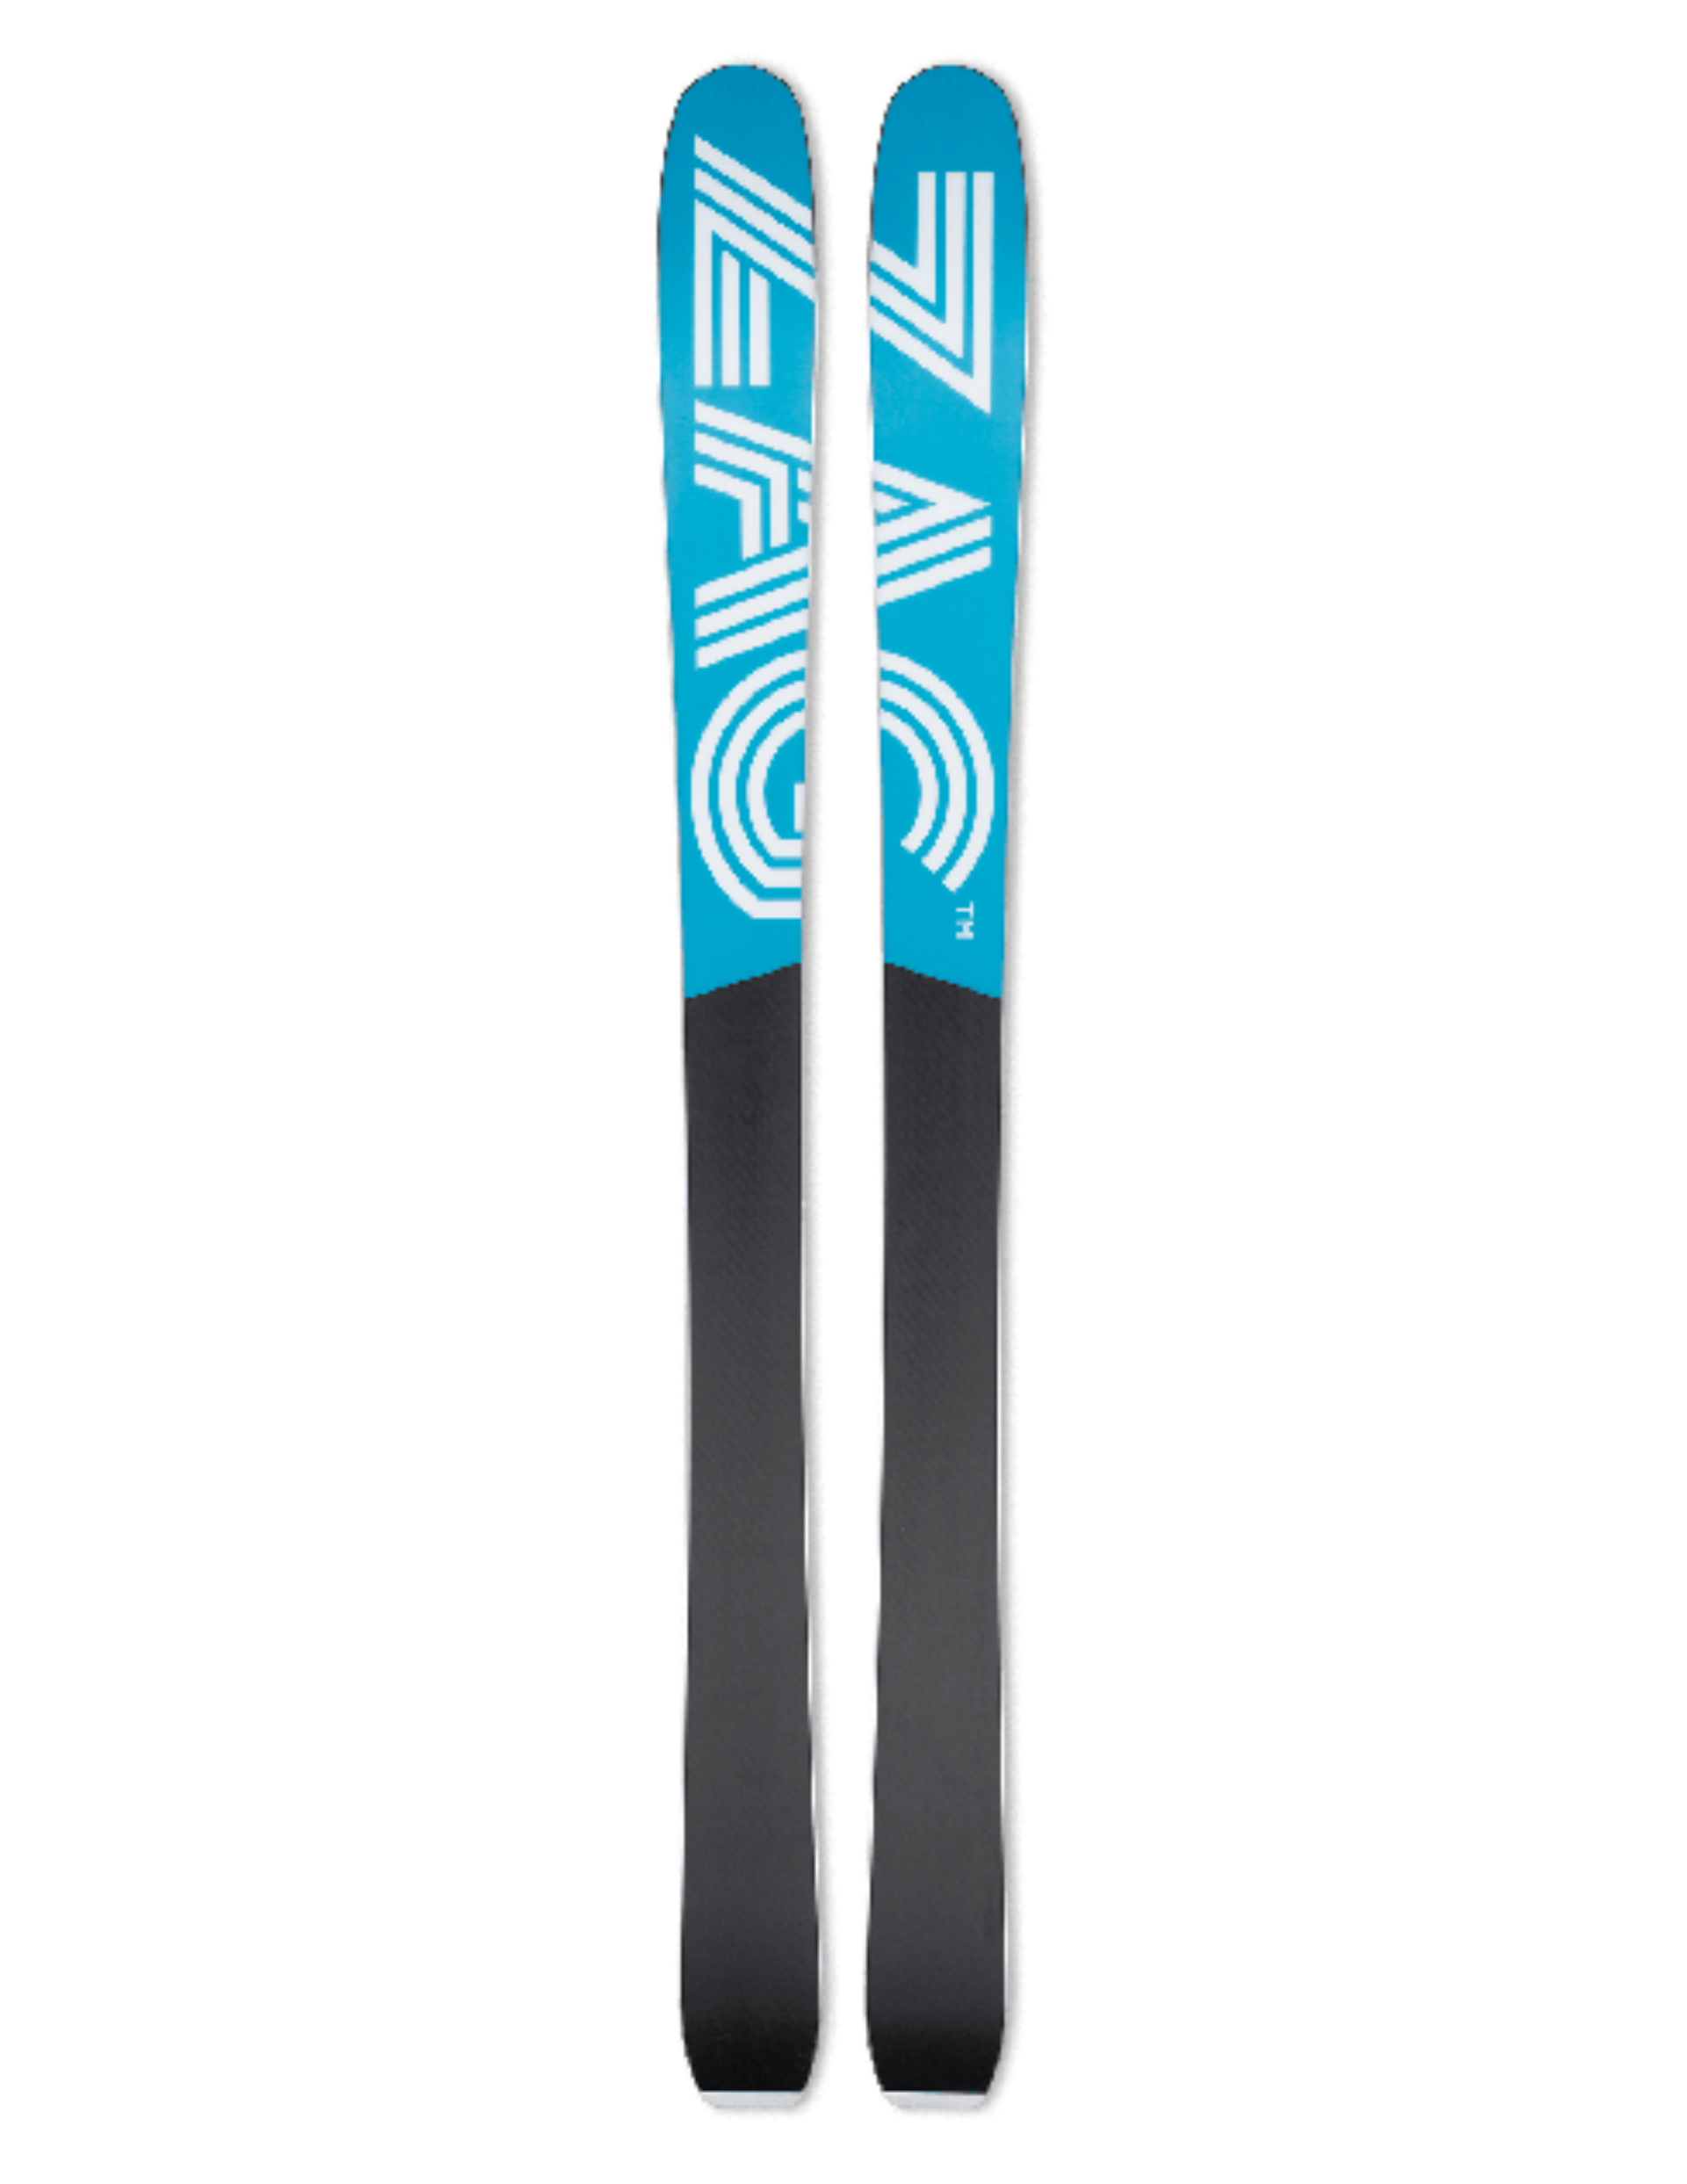 Skis de FreeRando ZAG Ubac 95 pour femme : semelle frittée pour une glisse optimale